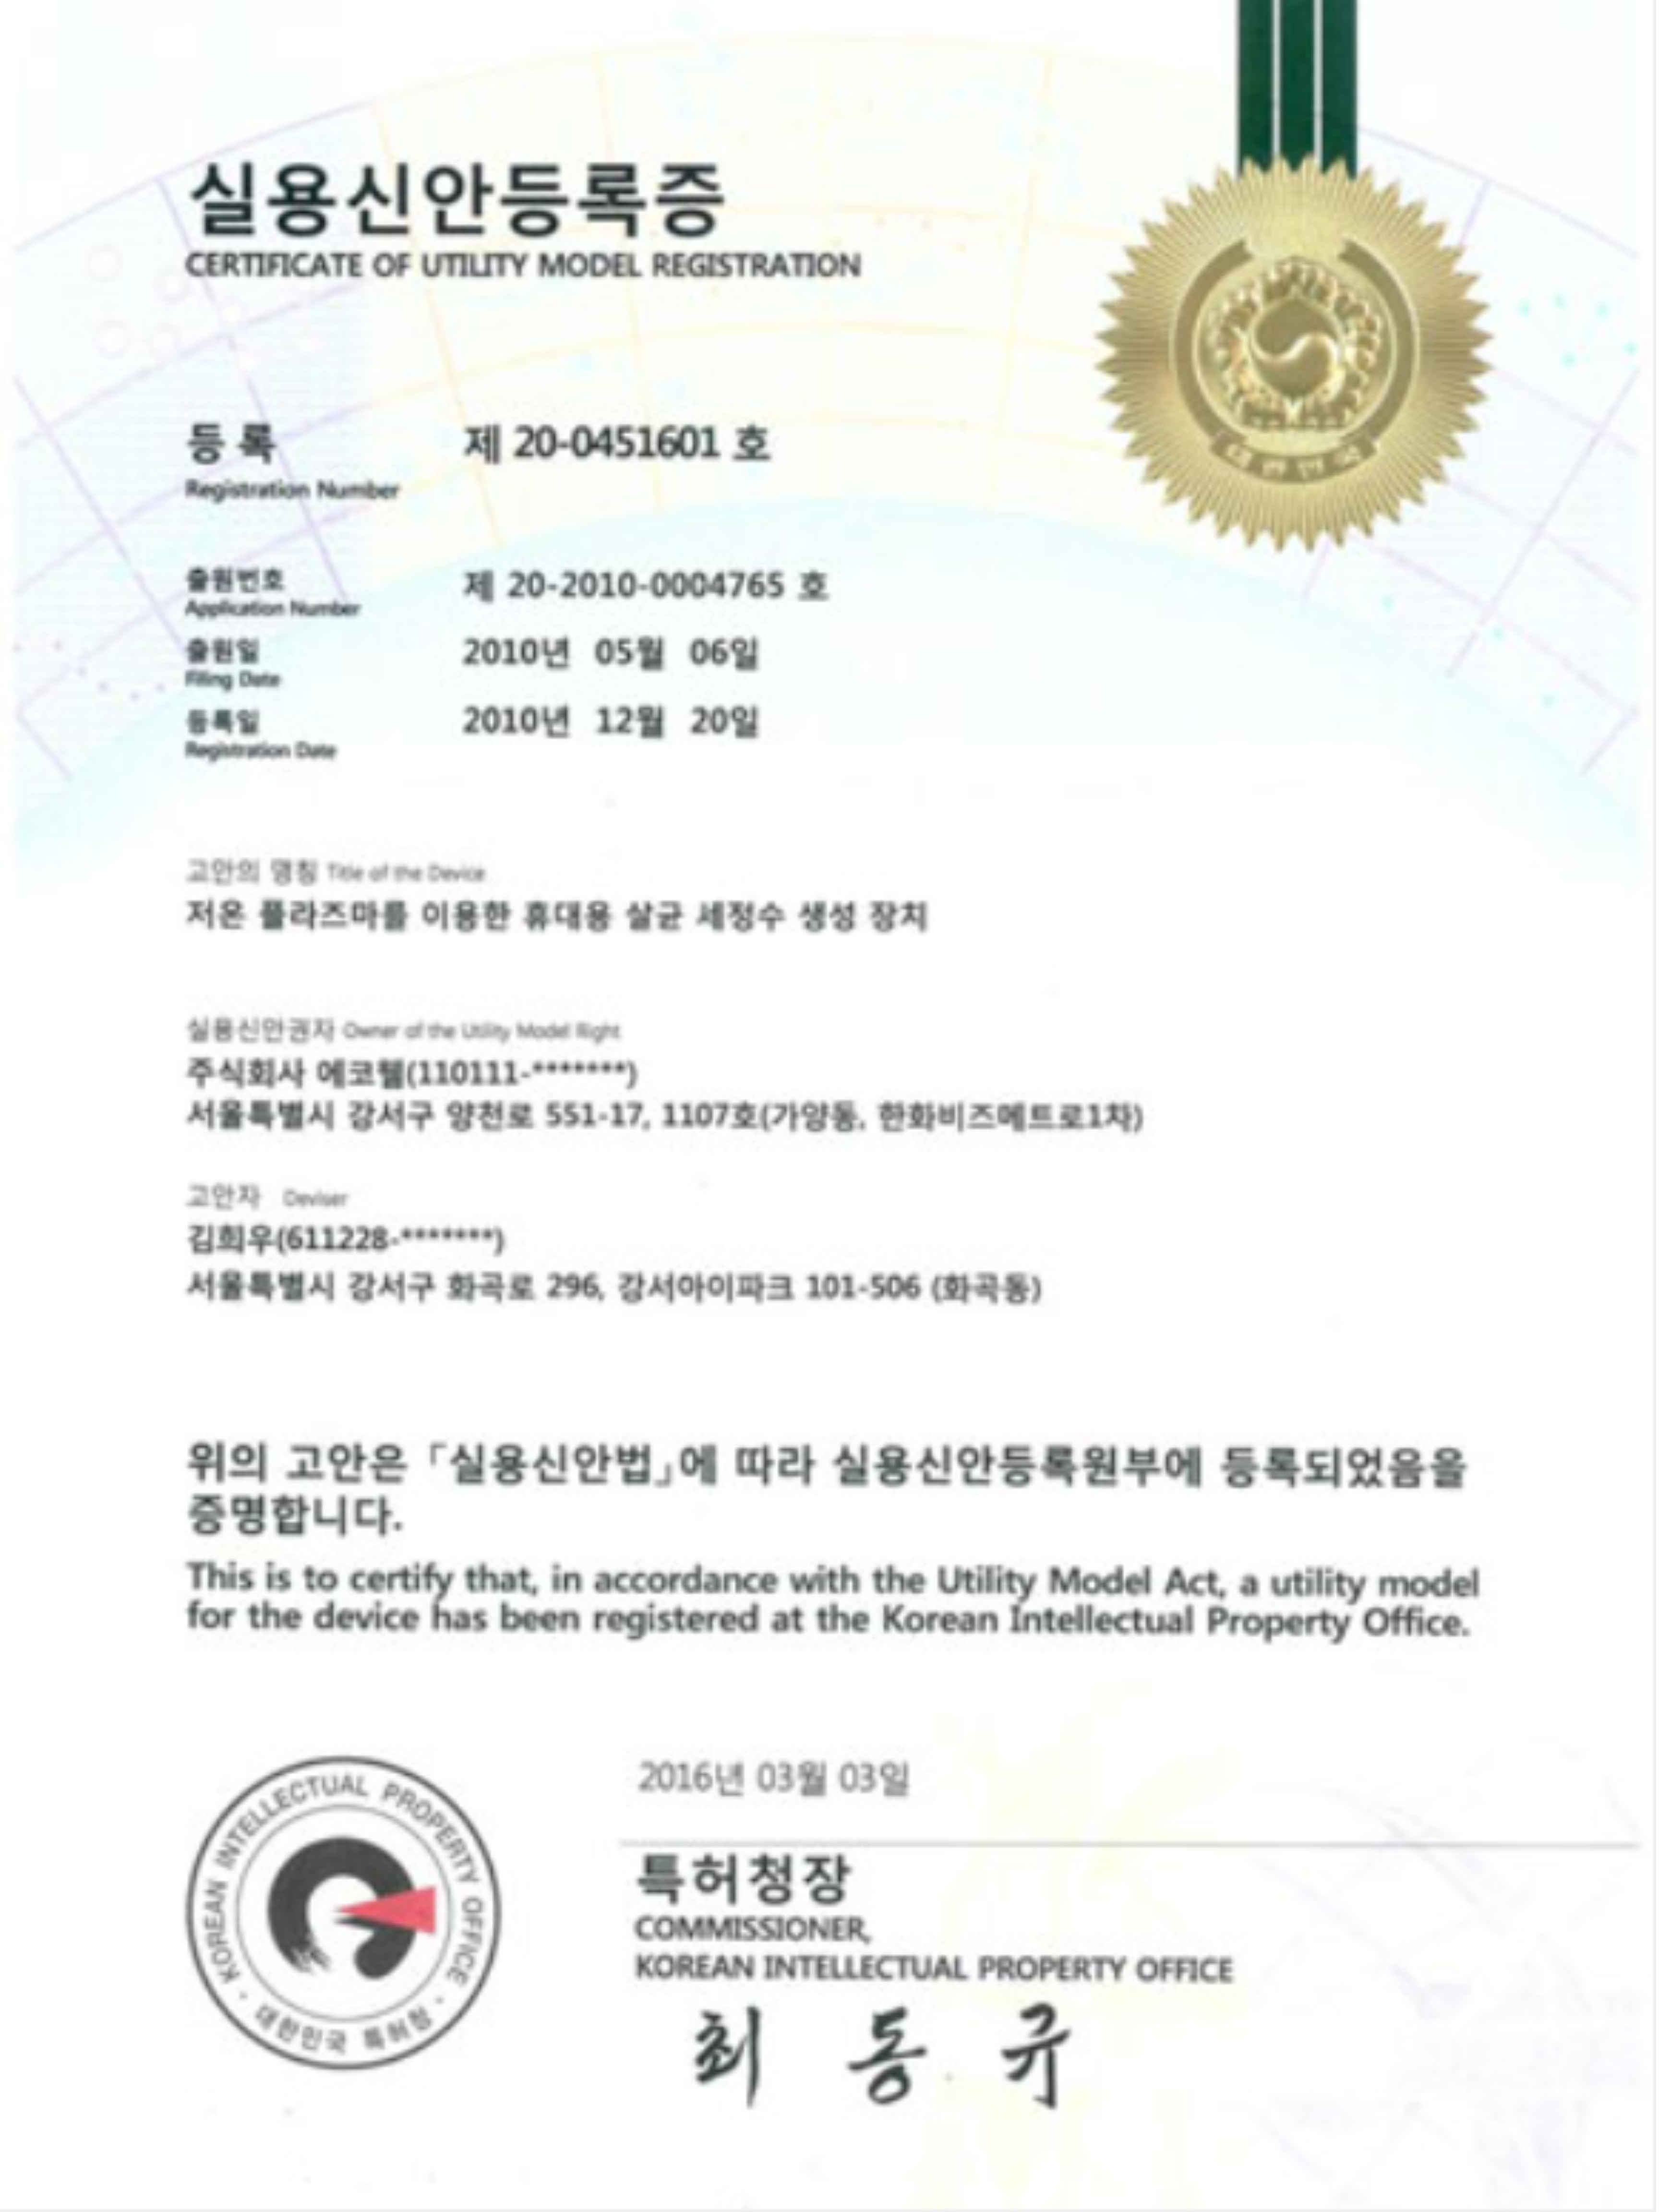 Certificado de registro de modelo de utilidad para dispositivo portátil de generación de agua de limpieza esterilizada mediante plasma a baja temperatura